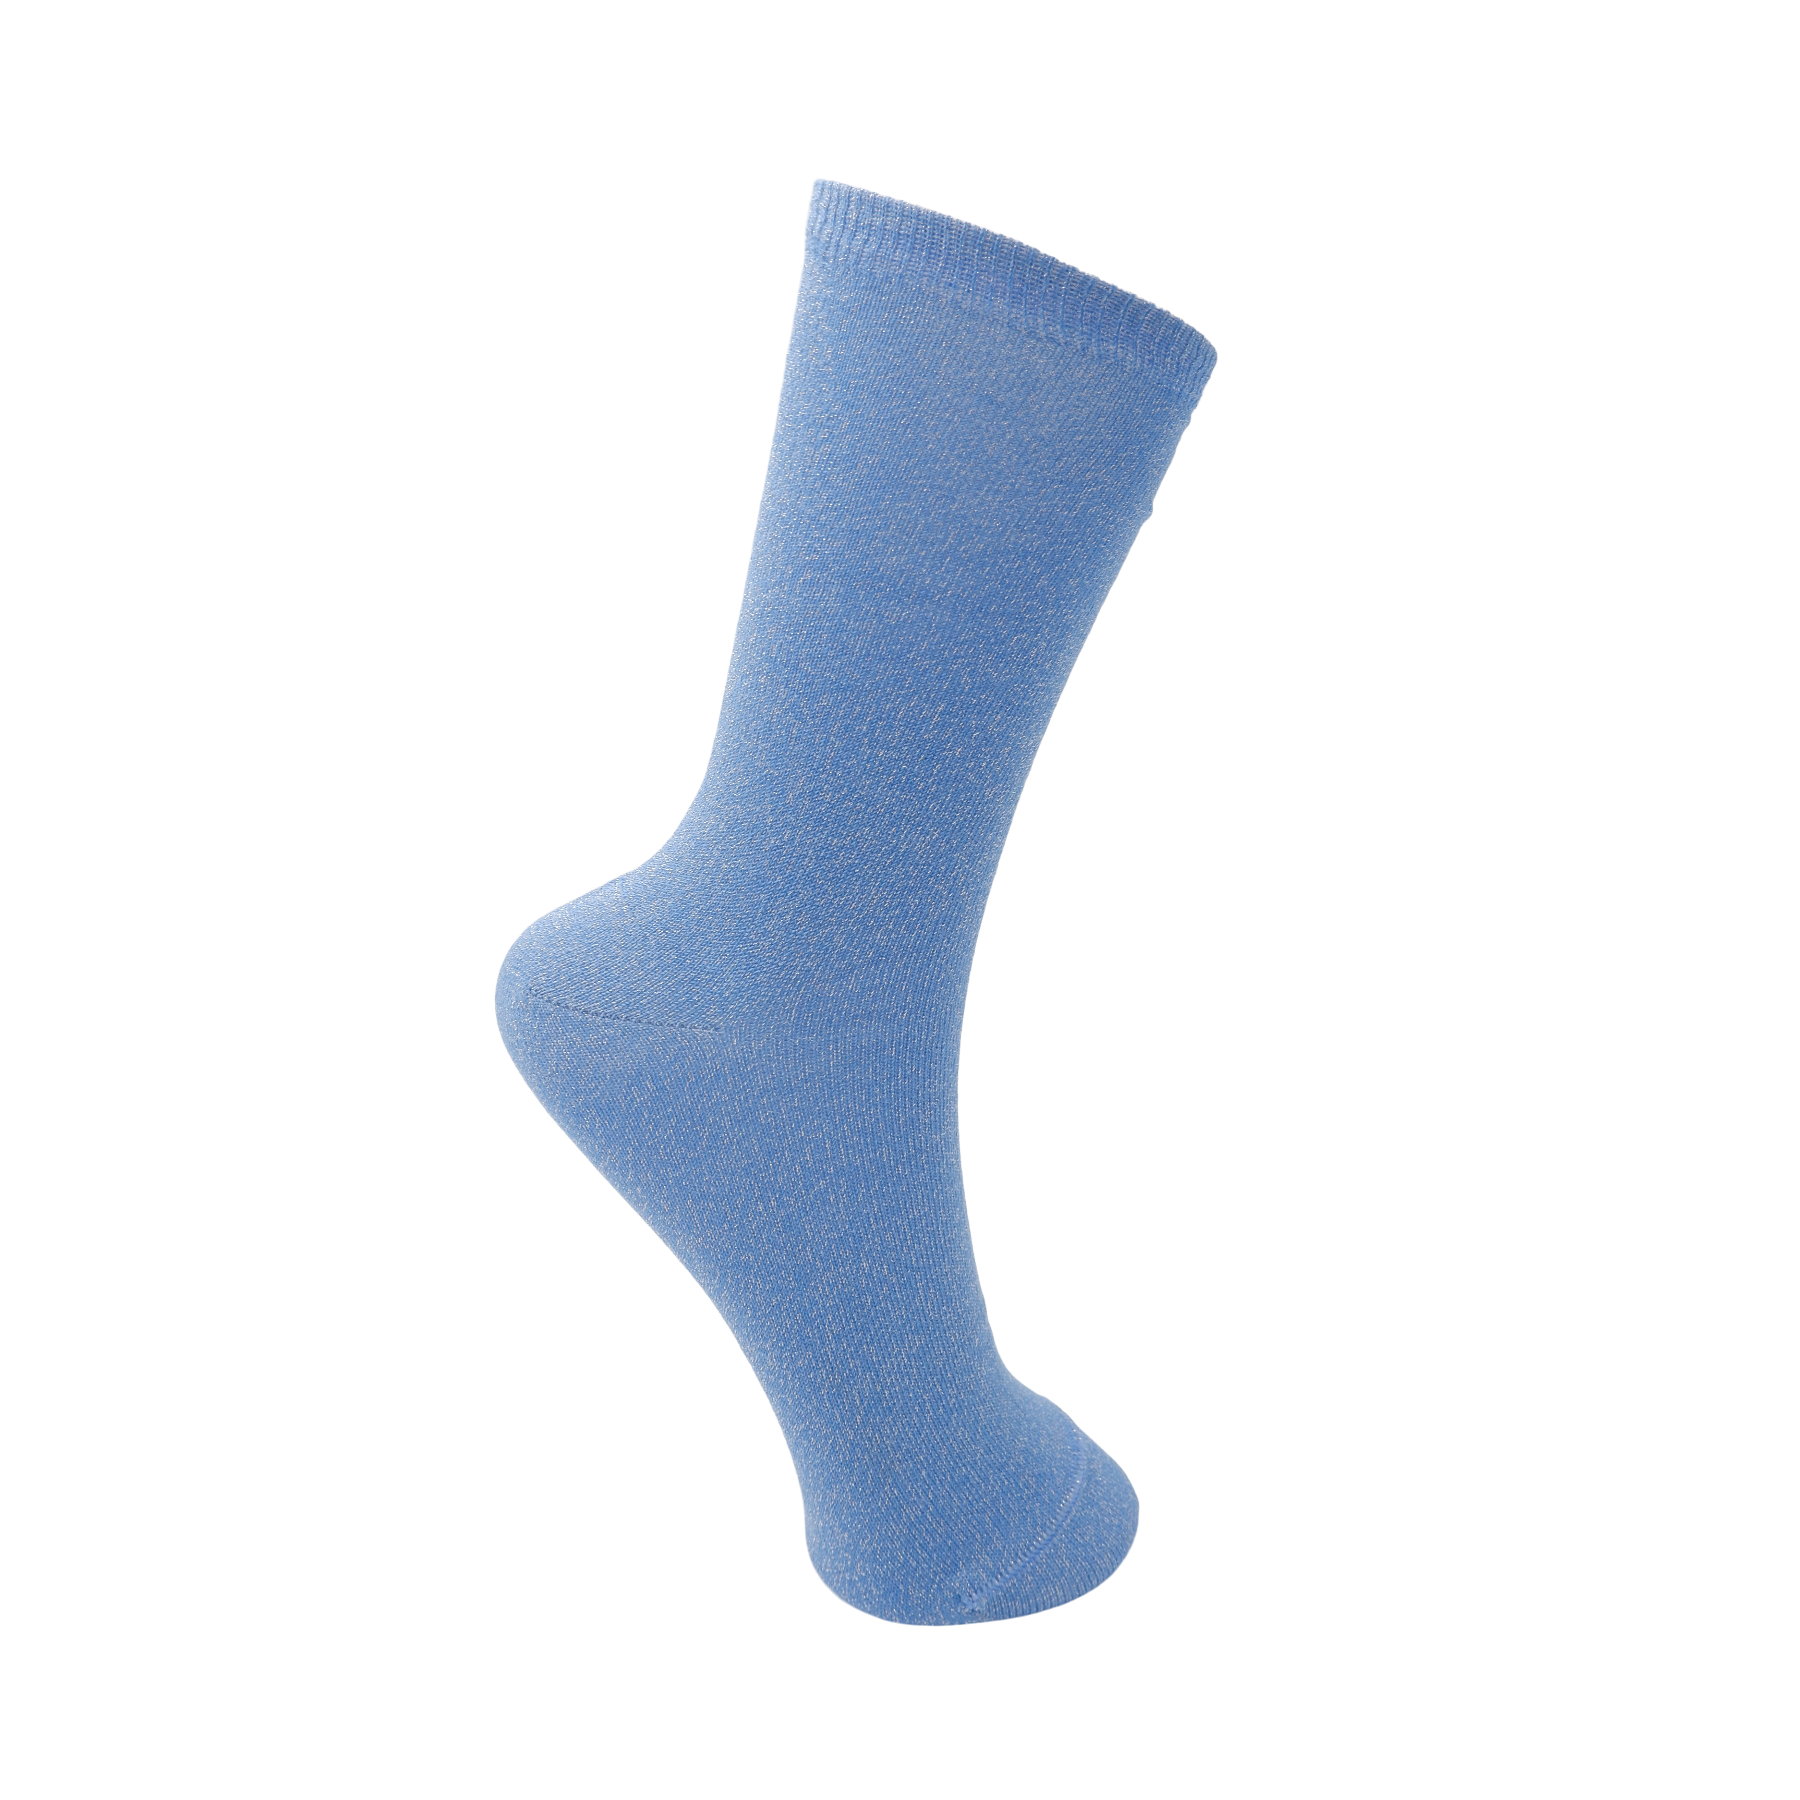 Cloud Blue Lurex Socks by Black Colour